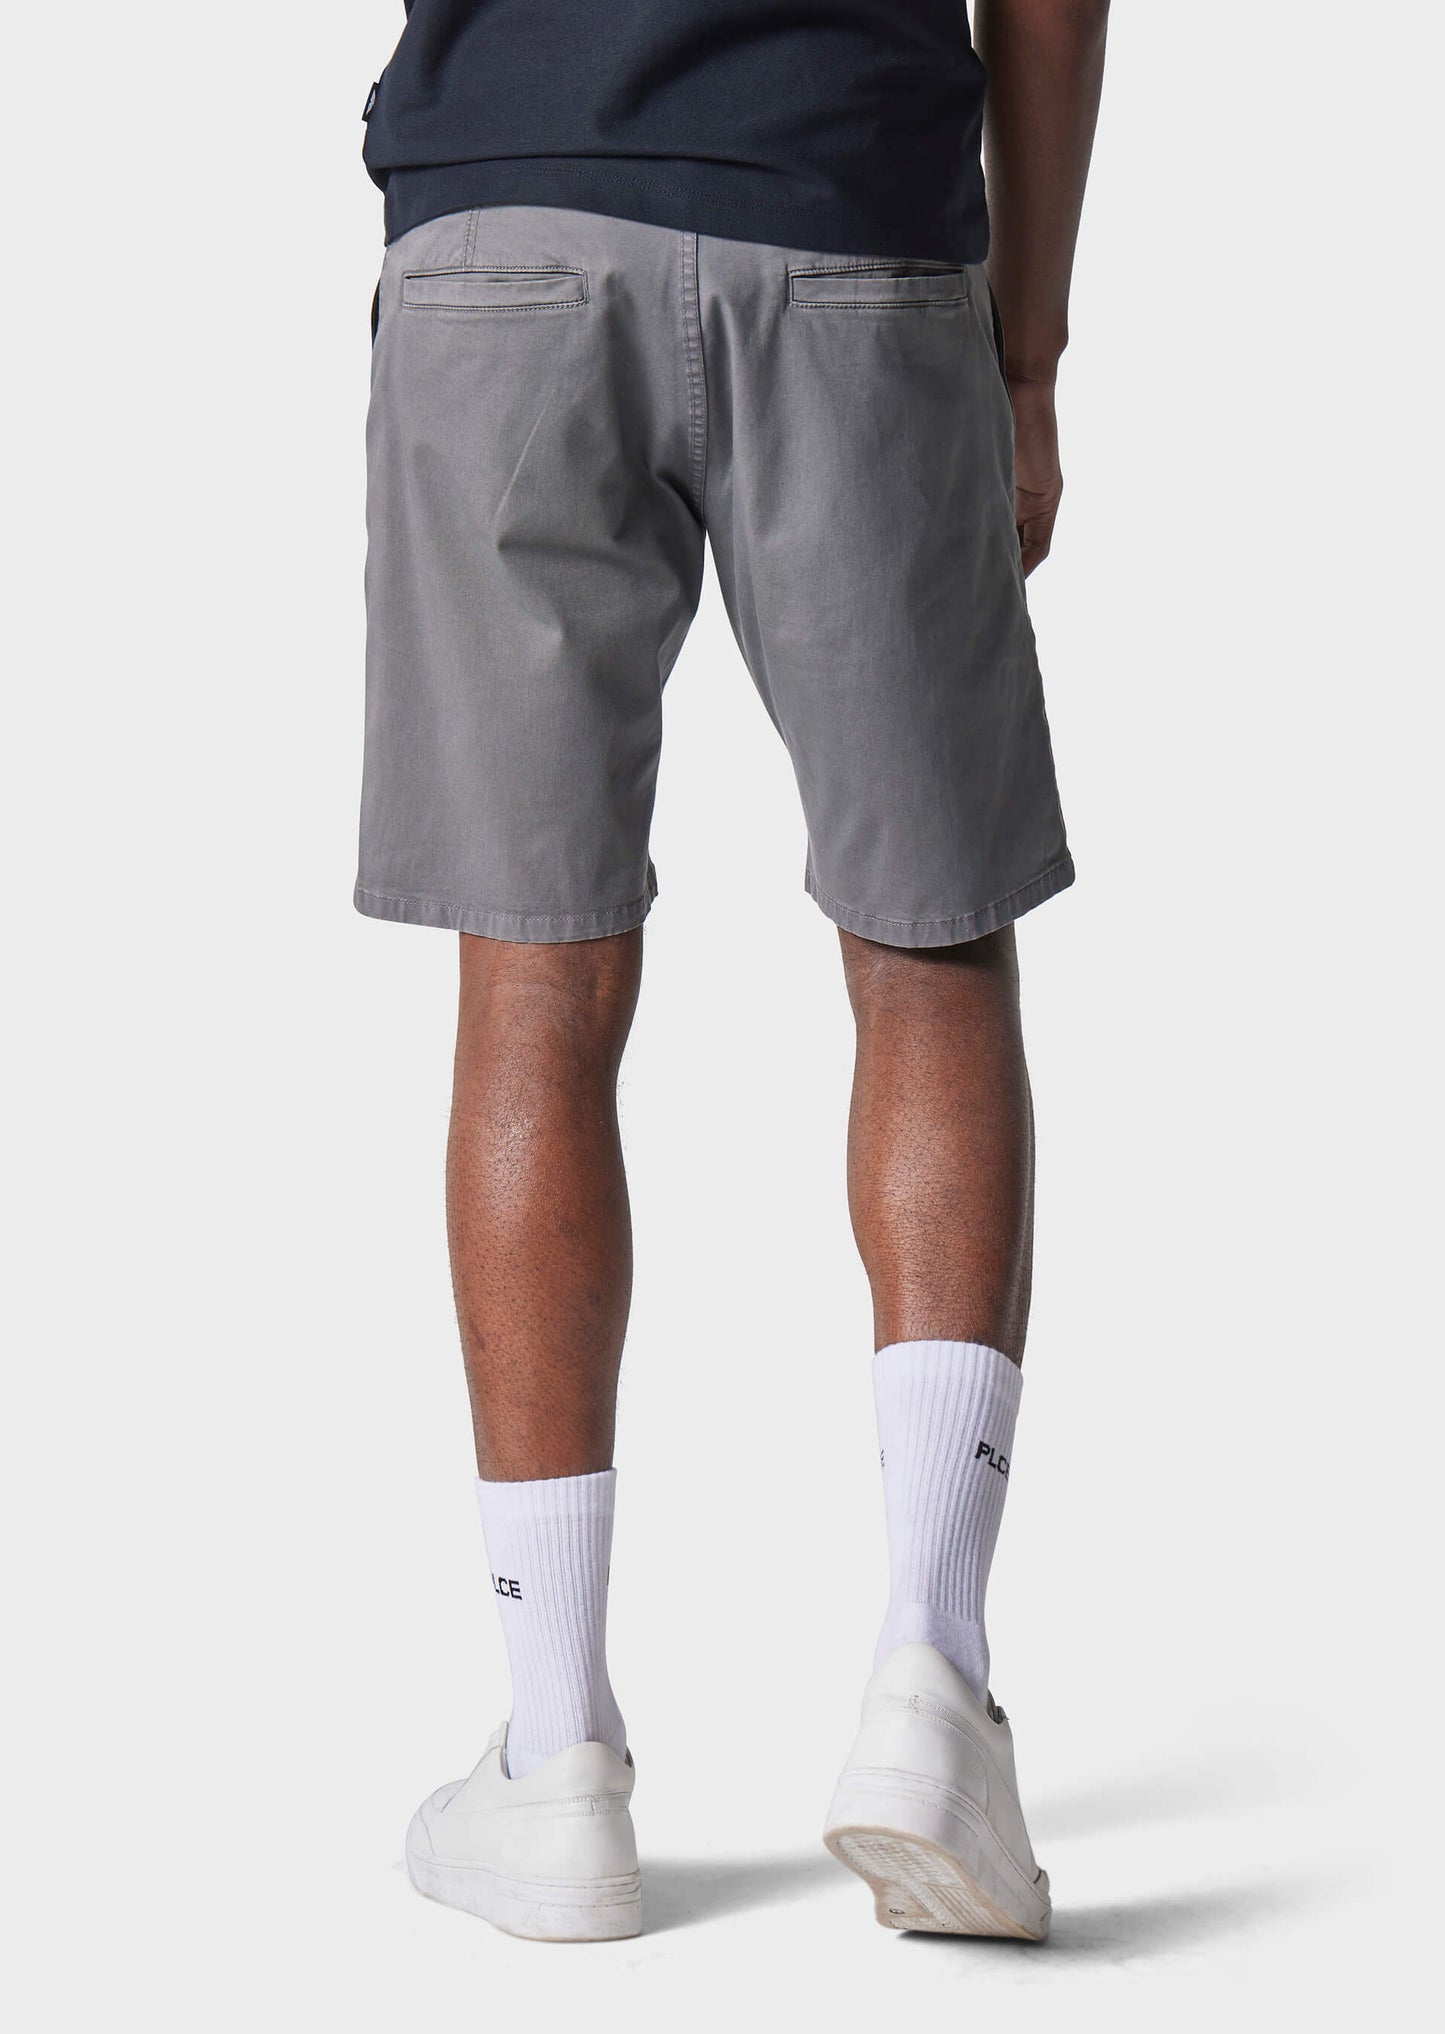 Dawkins Grey Shorts